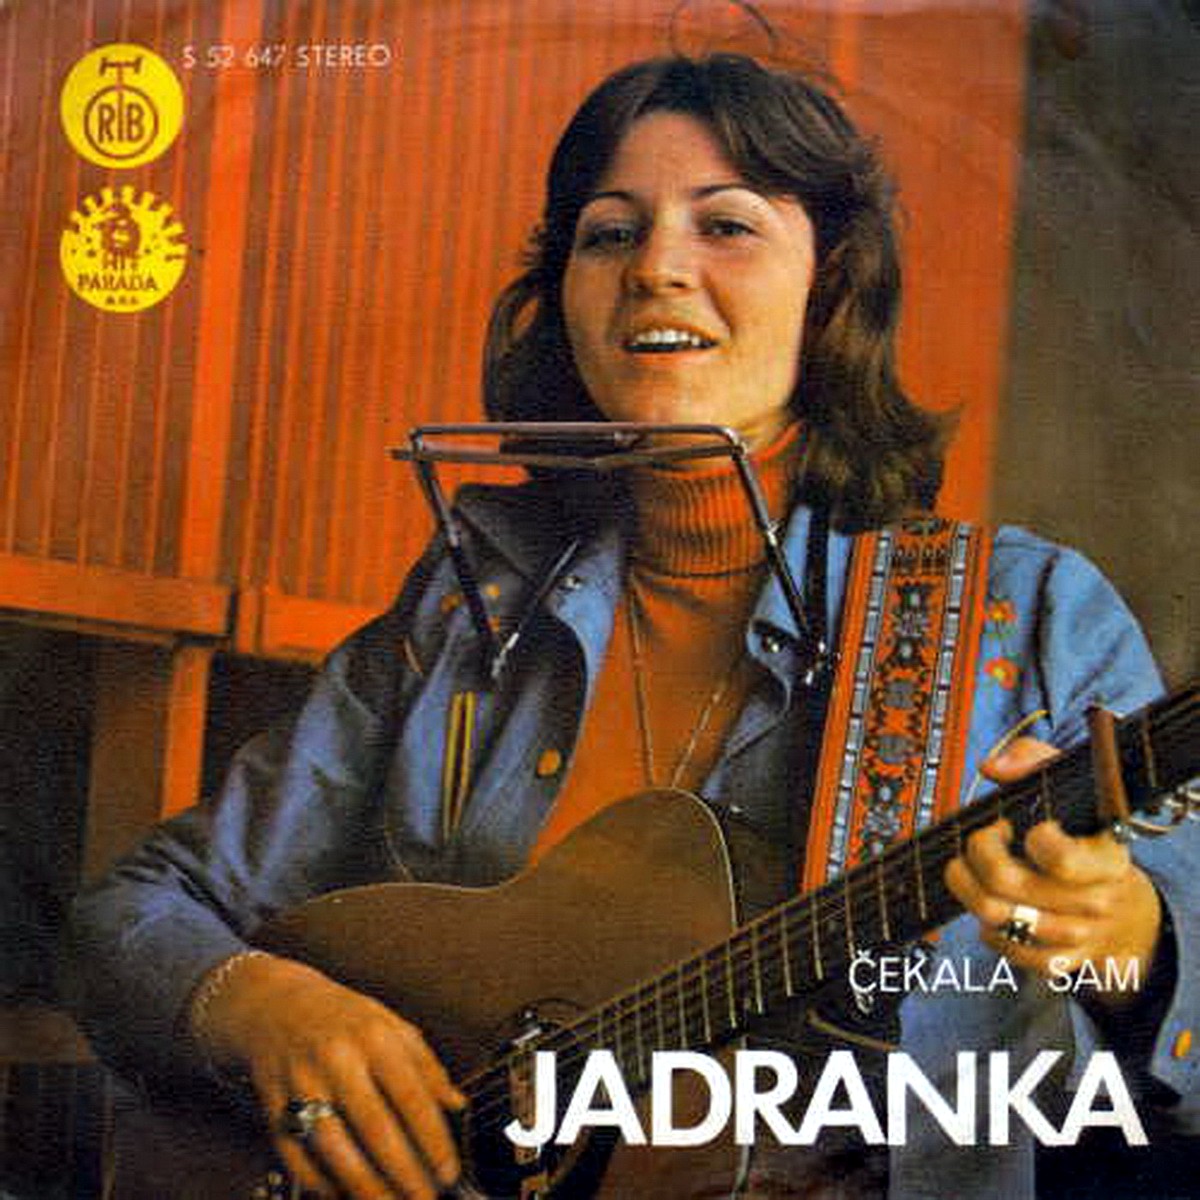 Jadranka Stojakovic 1974 Cekala sam a